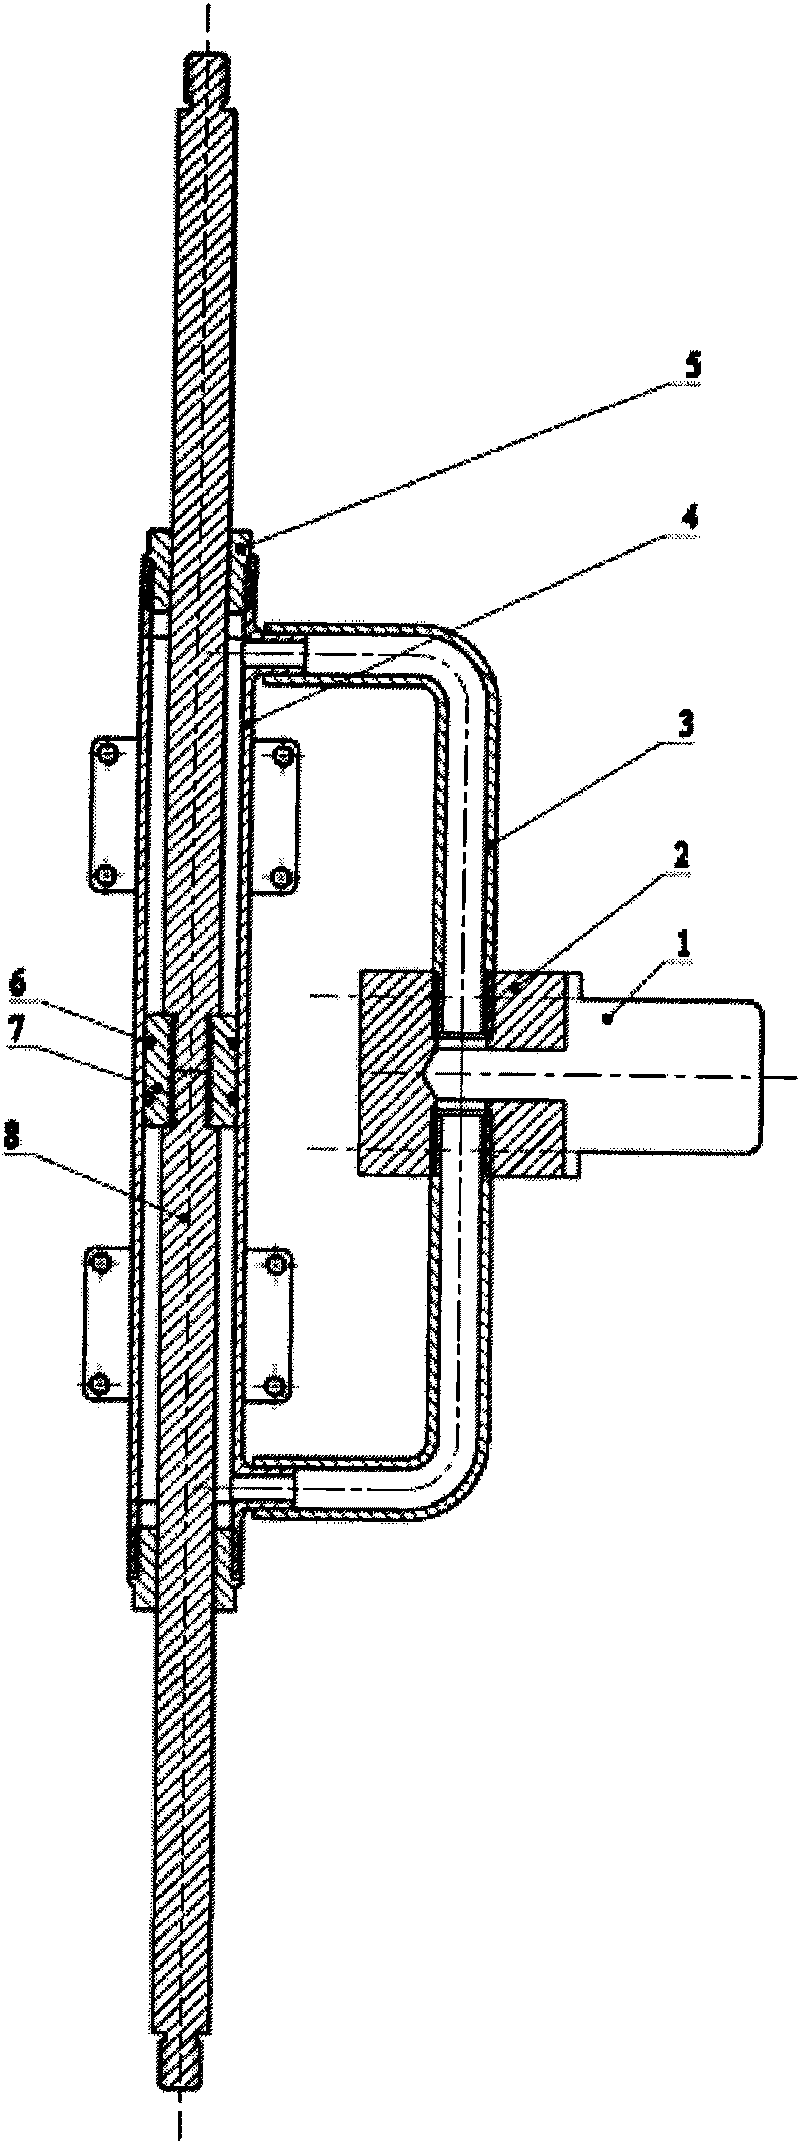 Hydraulic positioning mechanism